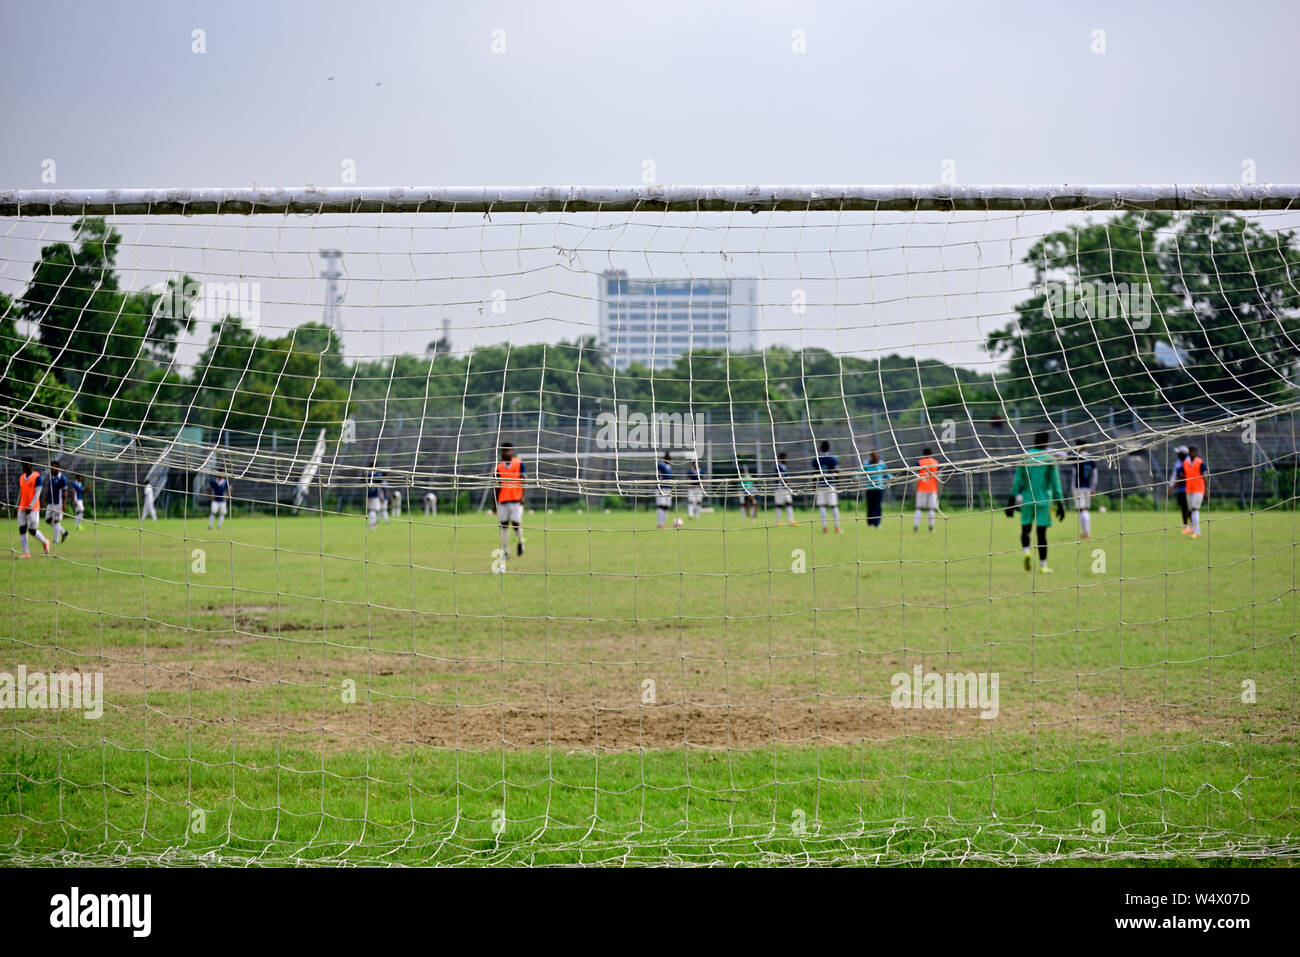 Les garçons jouent au soccer dans un terrain de football, Photo est capturé à l'origine de buts de soccer. Banque D'Images